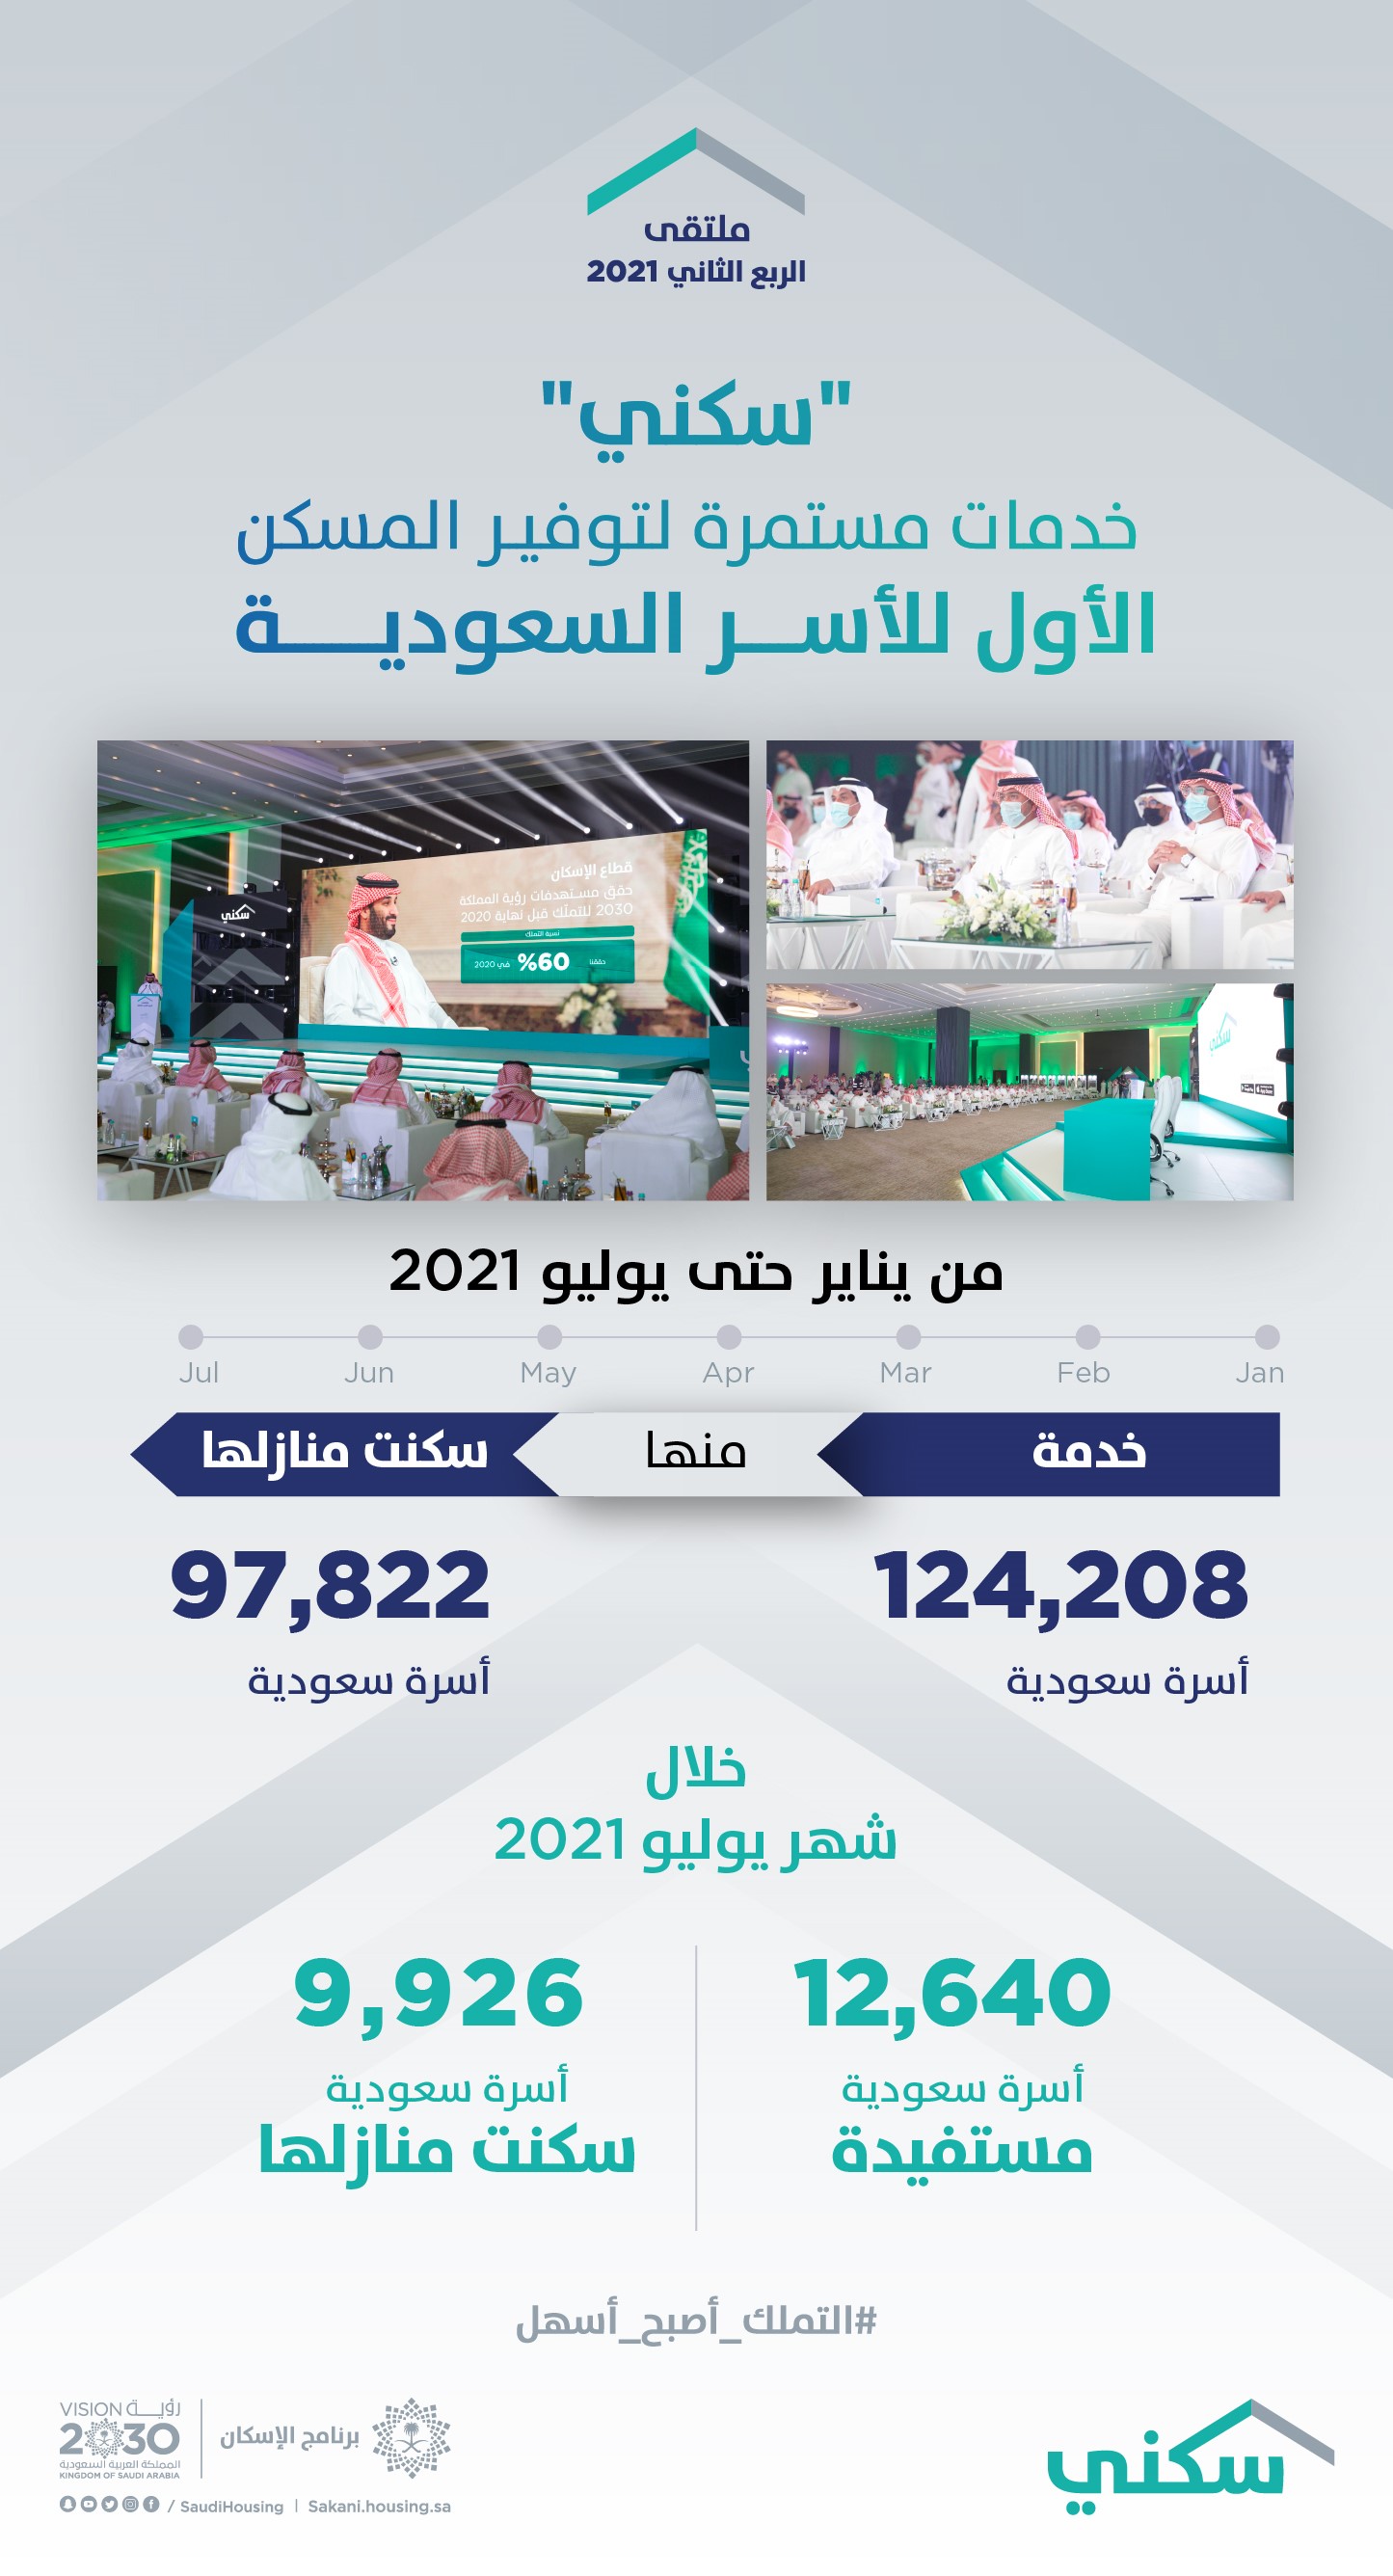 "سكني": 70% من الأسر السعودية وقّعت عقودها النهائية خلال 3 أشهر من استكمالها التسجيل